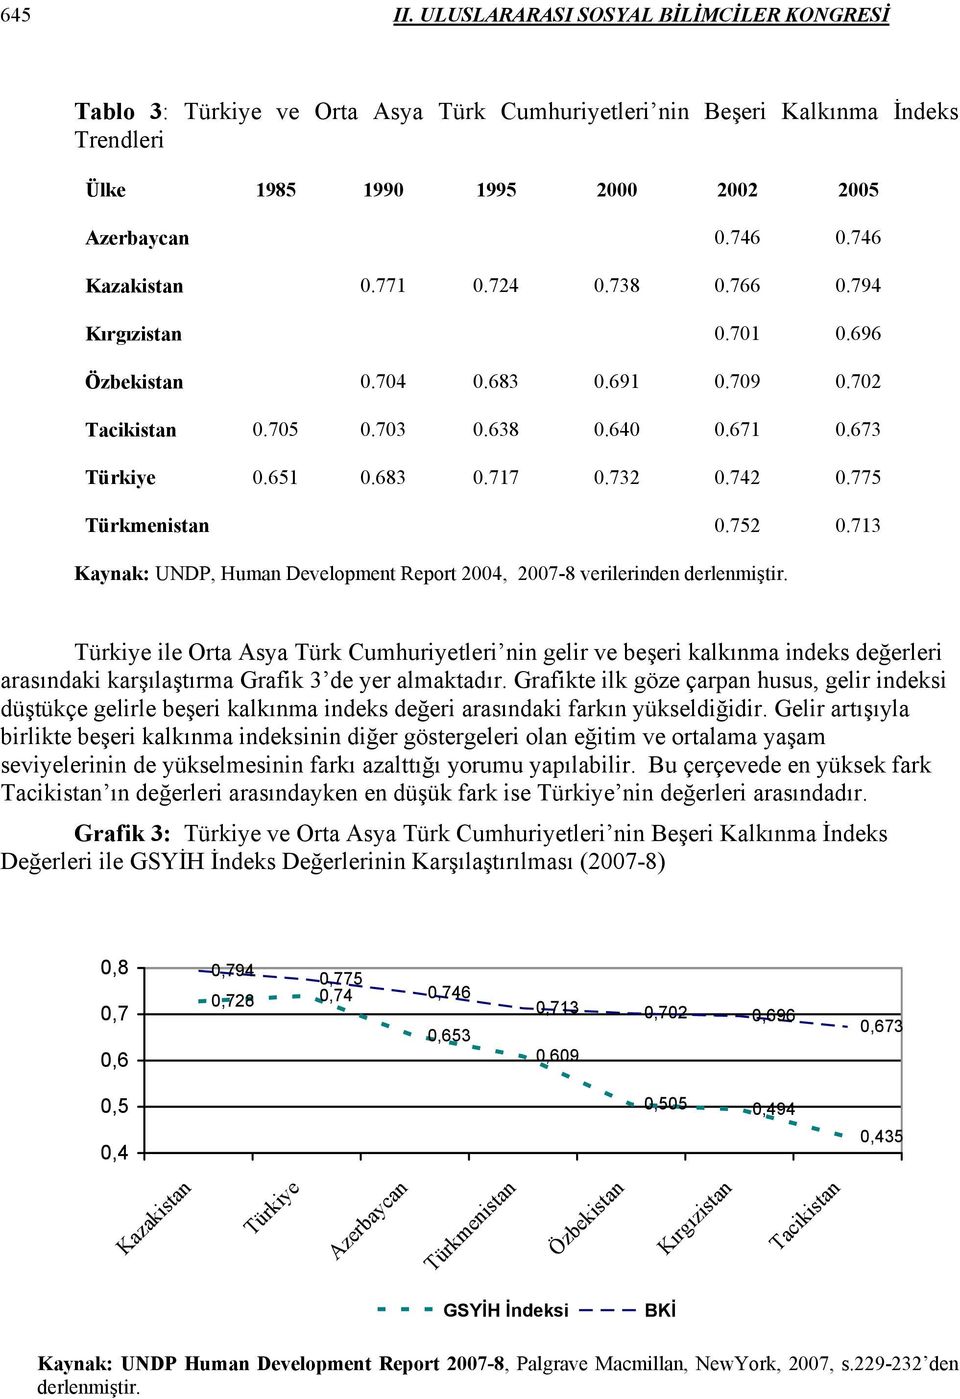 775 Türkmenistan 0.752 0.713 Kaynak: UNDP, Human Development Report 2004, 2007-8 verilerinden derlenmiştir.